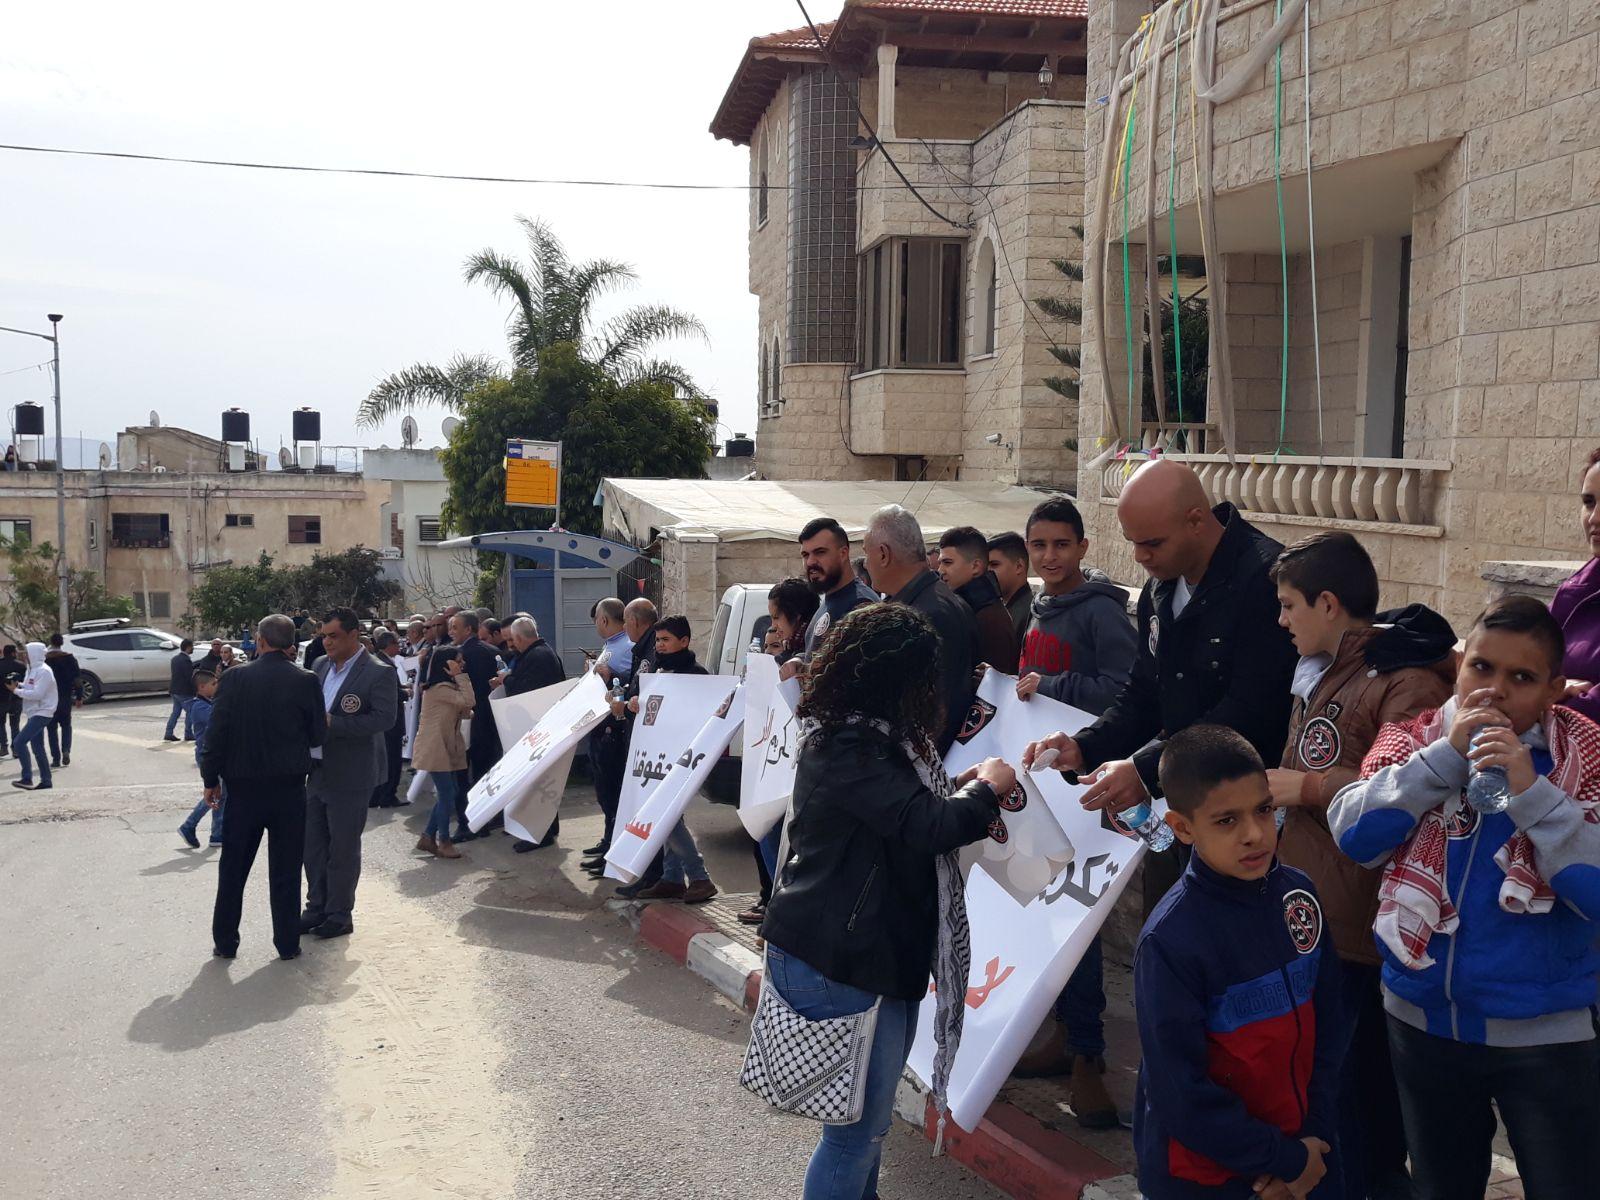  بركة: يتحتّم على فلسطينيي الداخل استقبال نتنياهو   بالصرامي على وجهه   2017122812295656